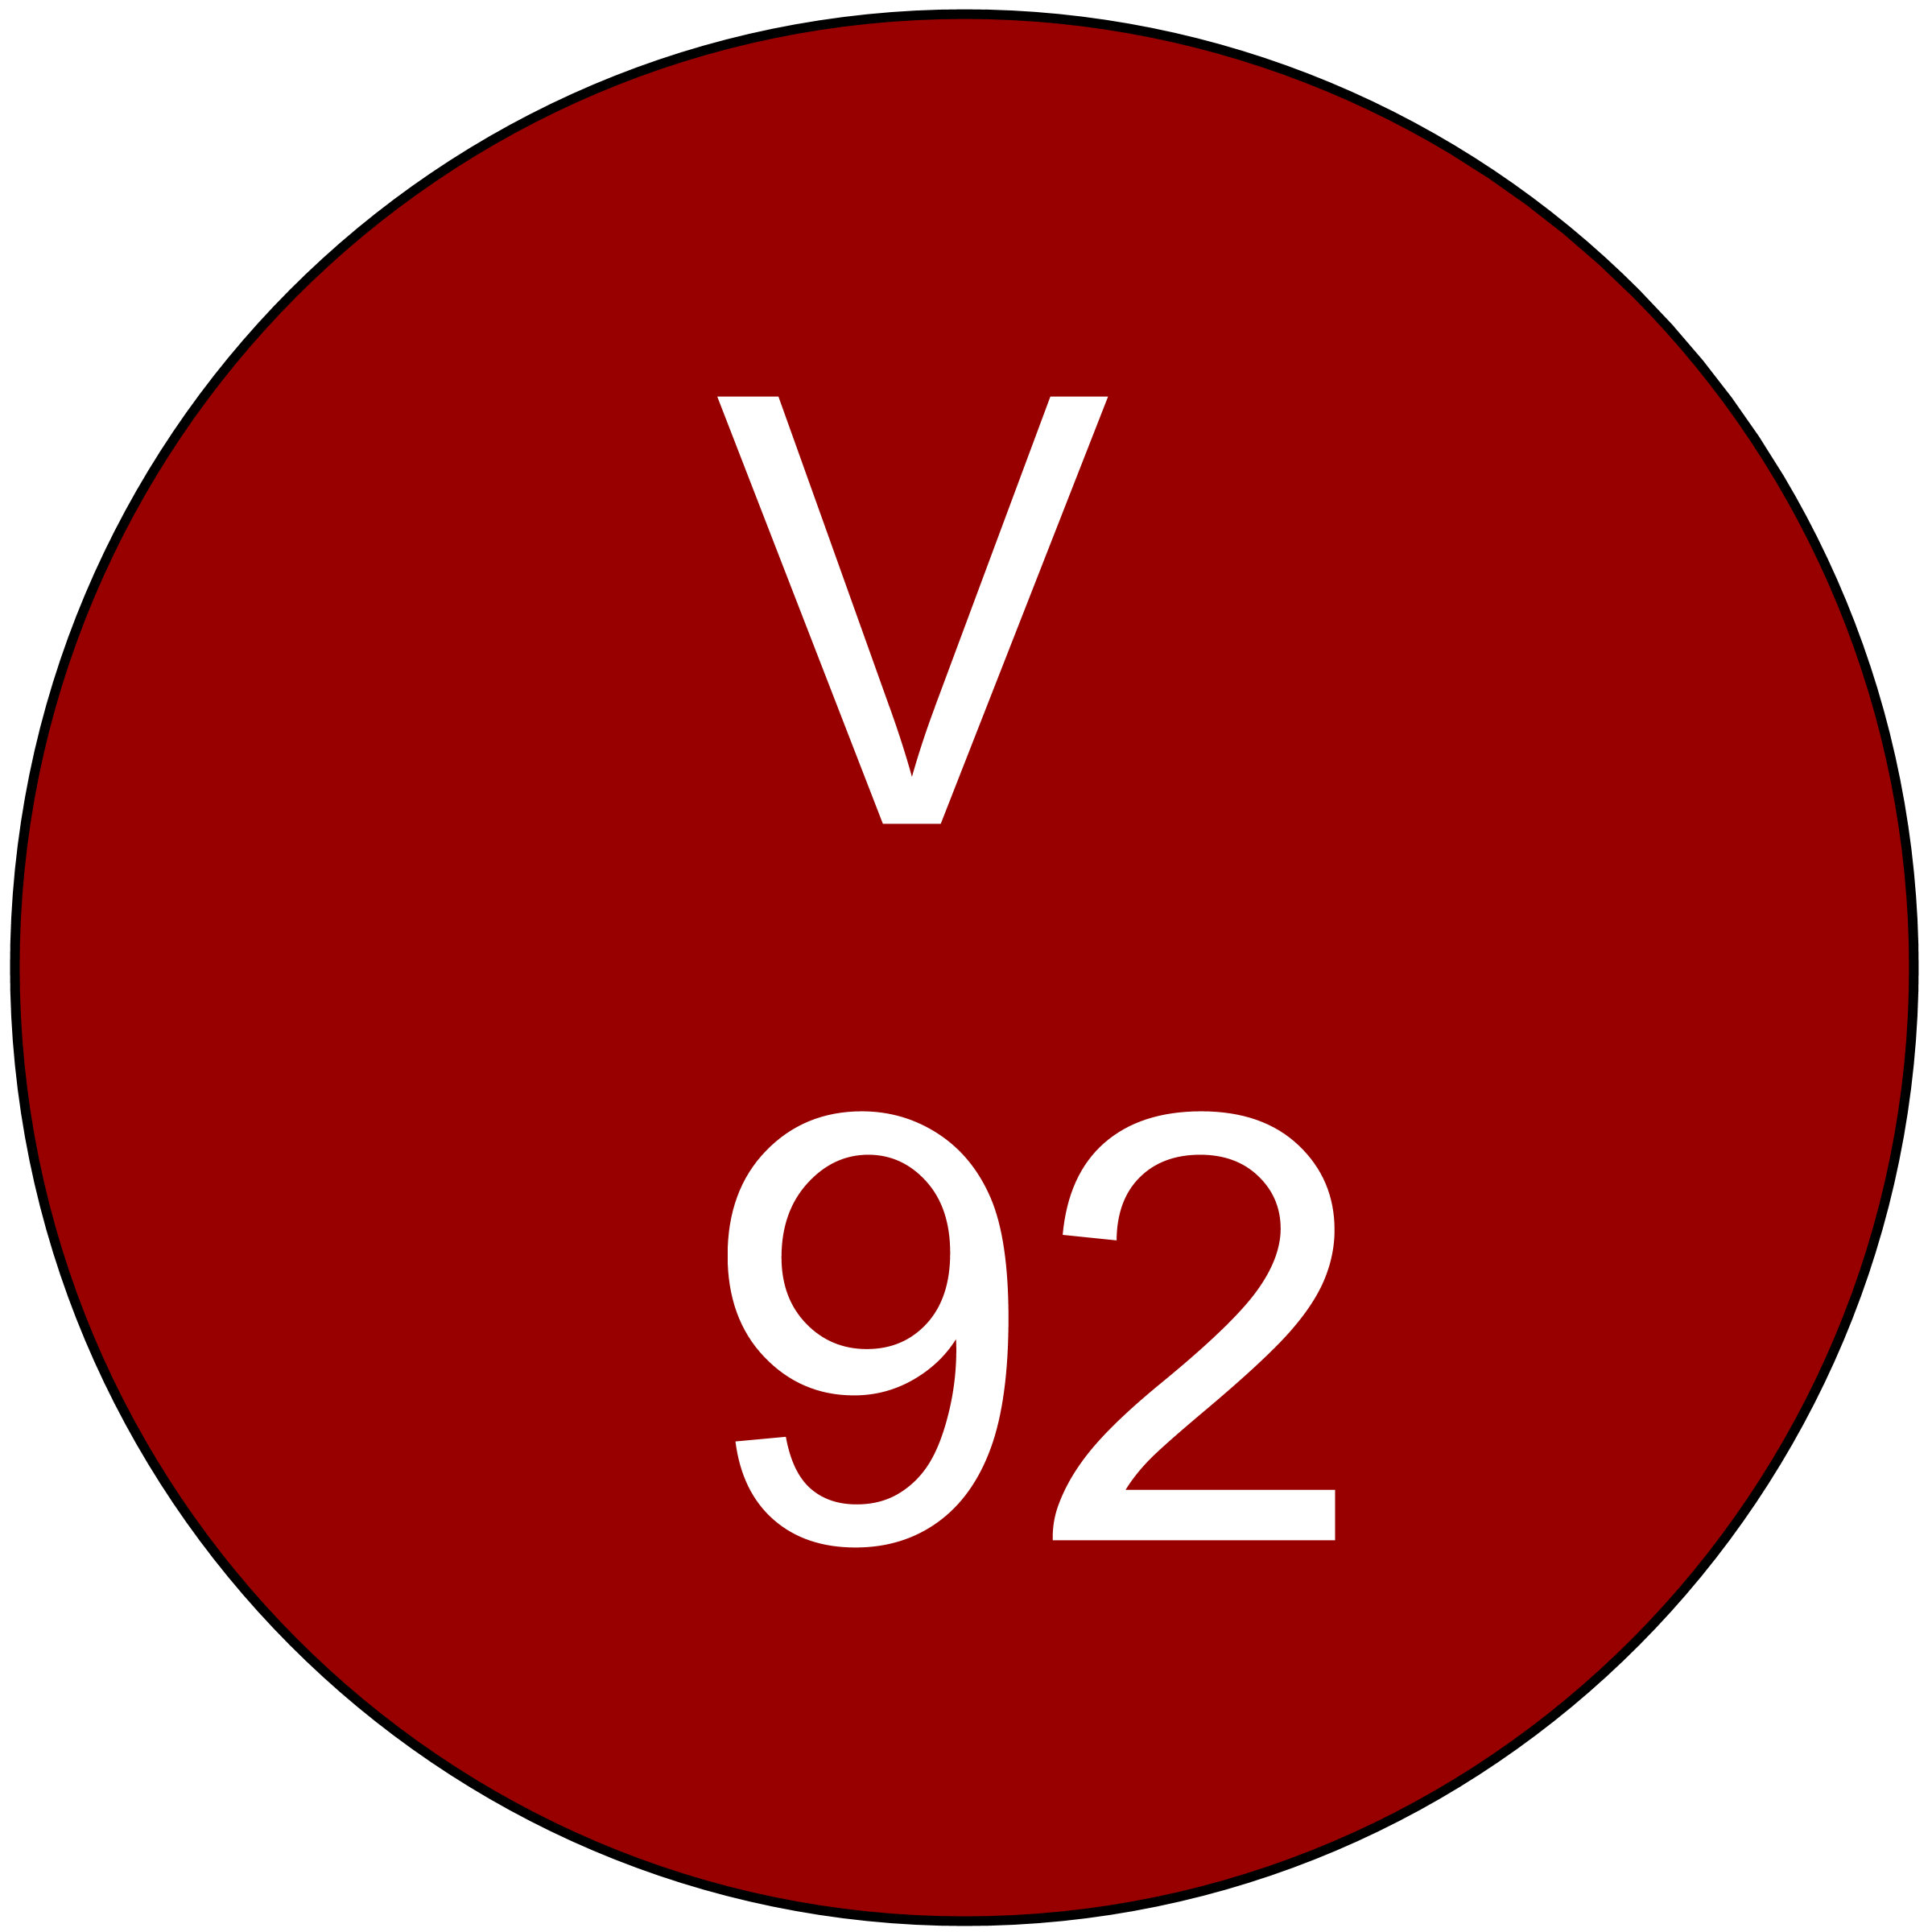 vinous-92-ratings